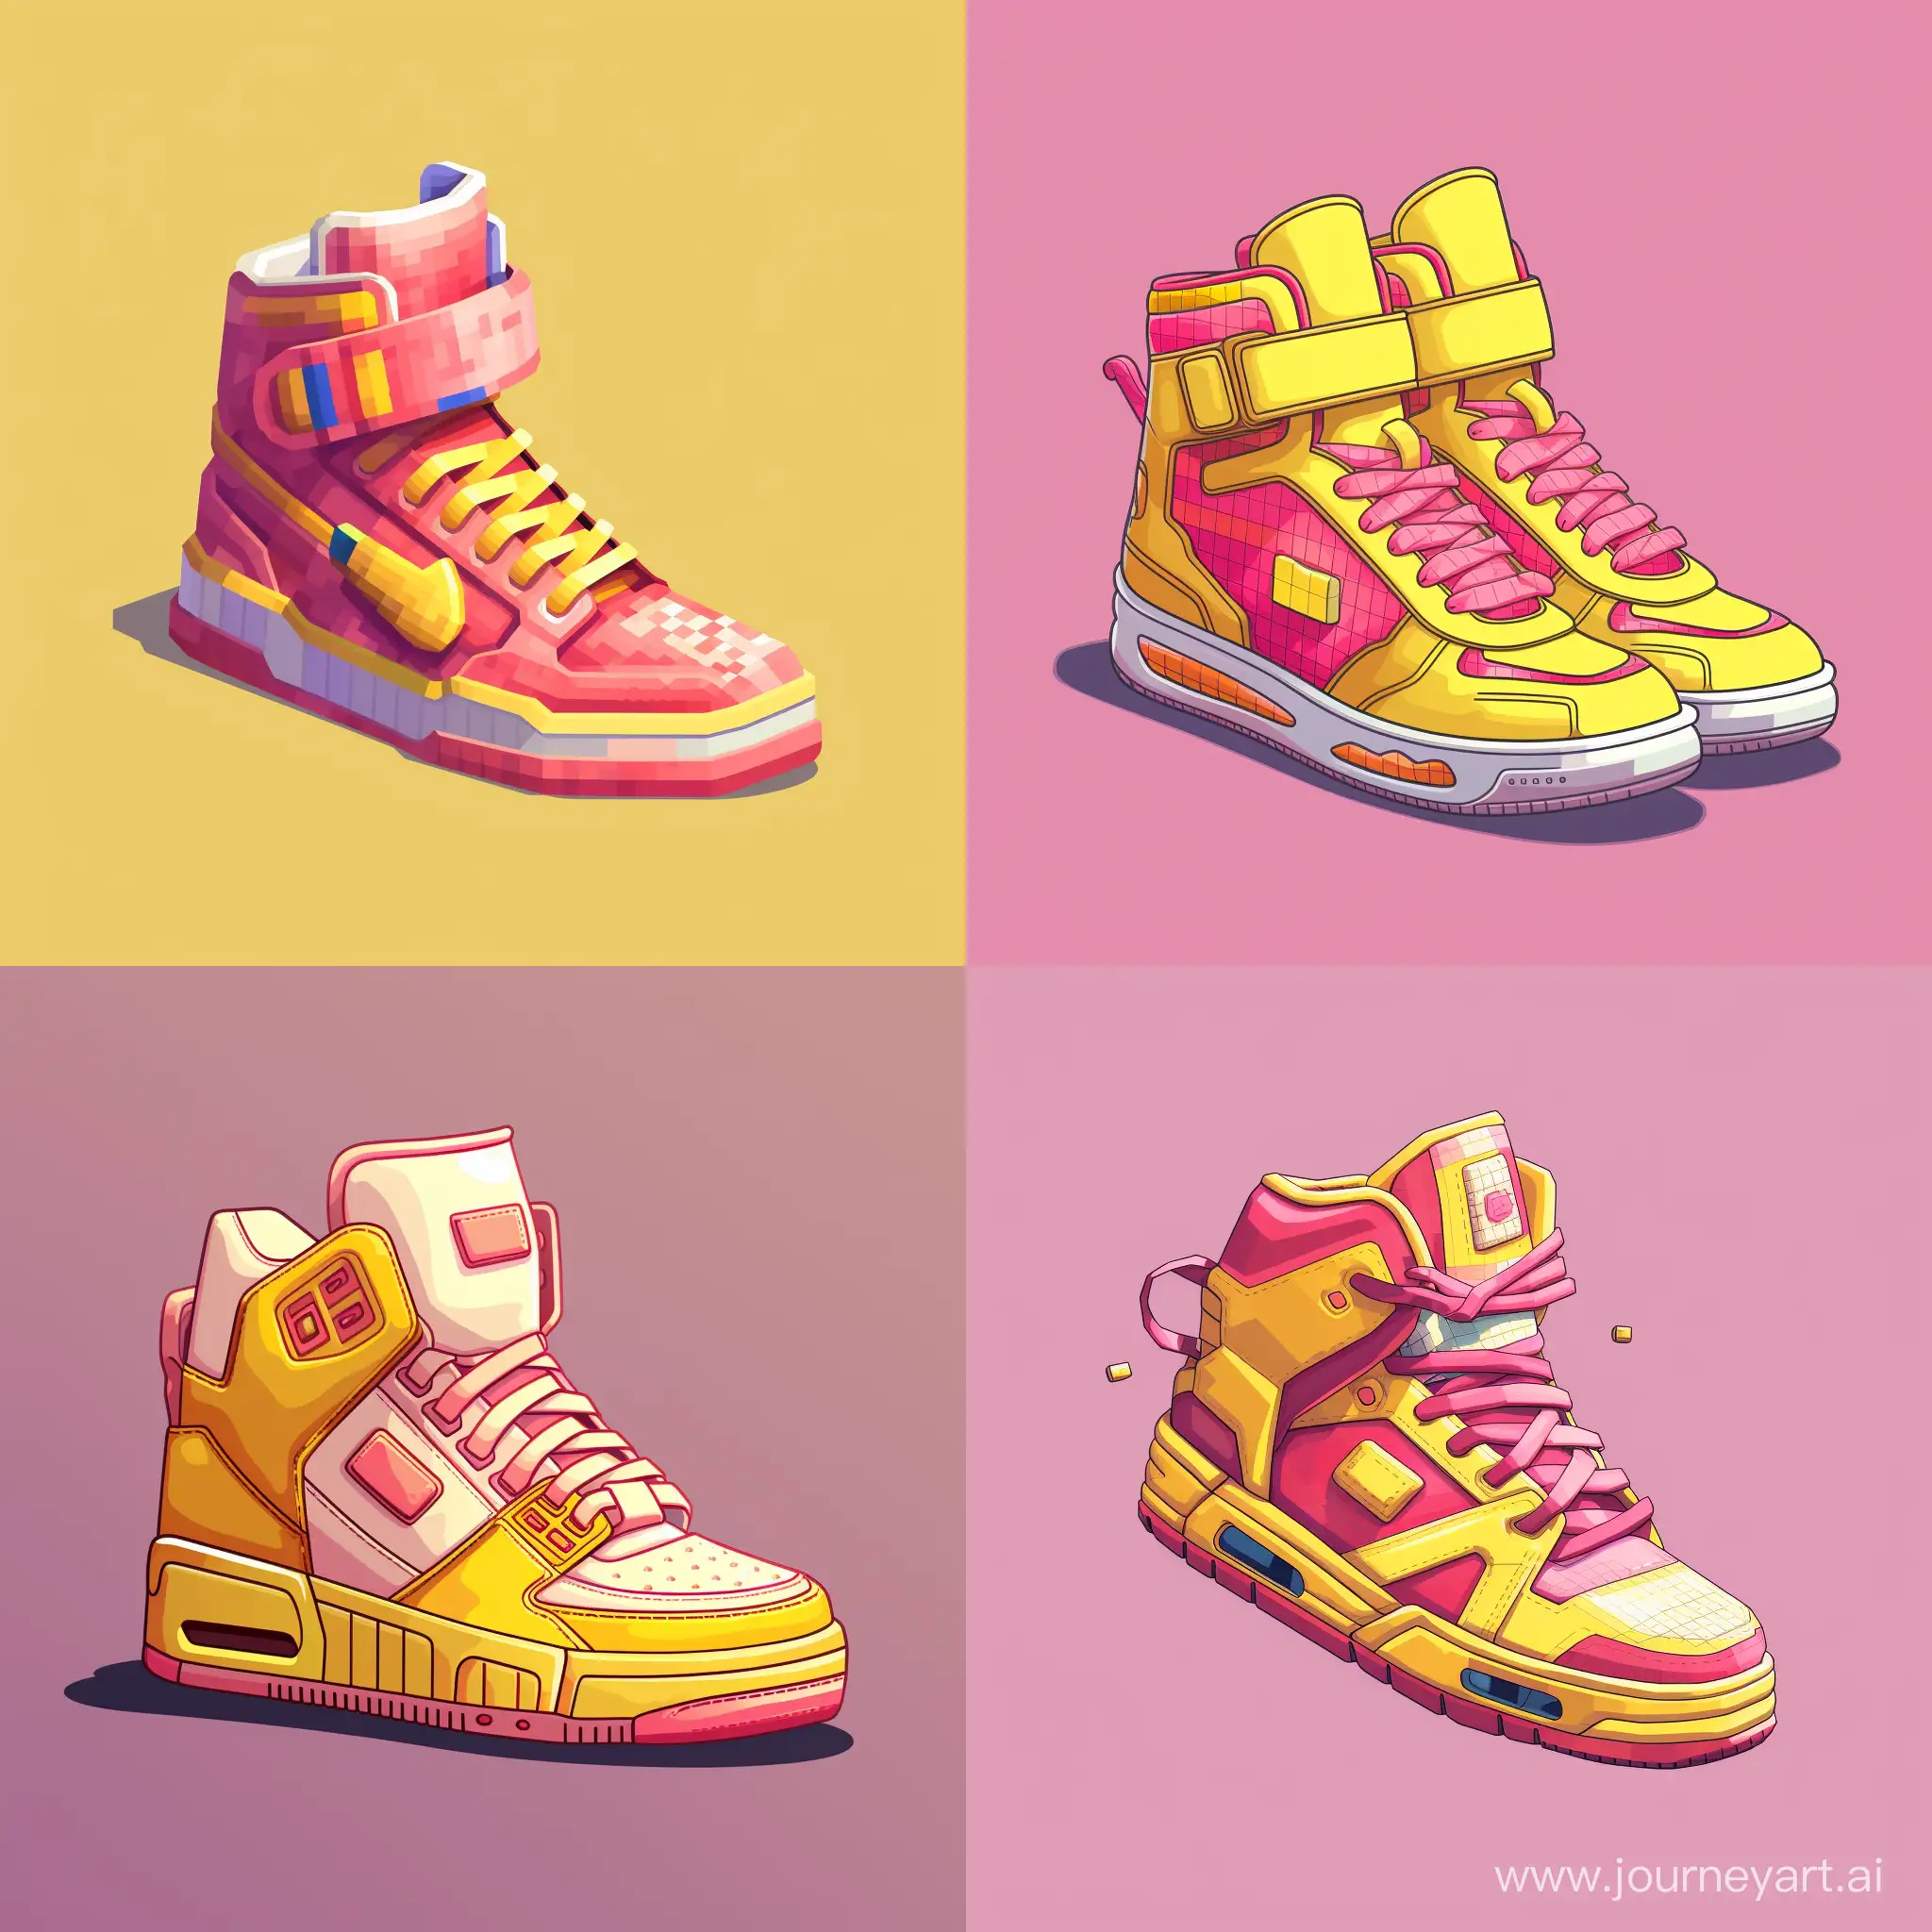 пиксель арт кроссовок, цвета розовый и желтые